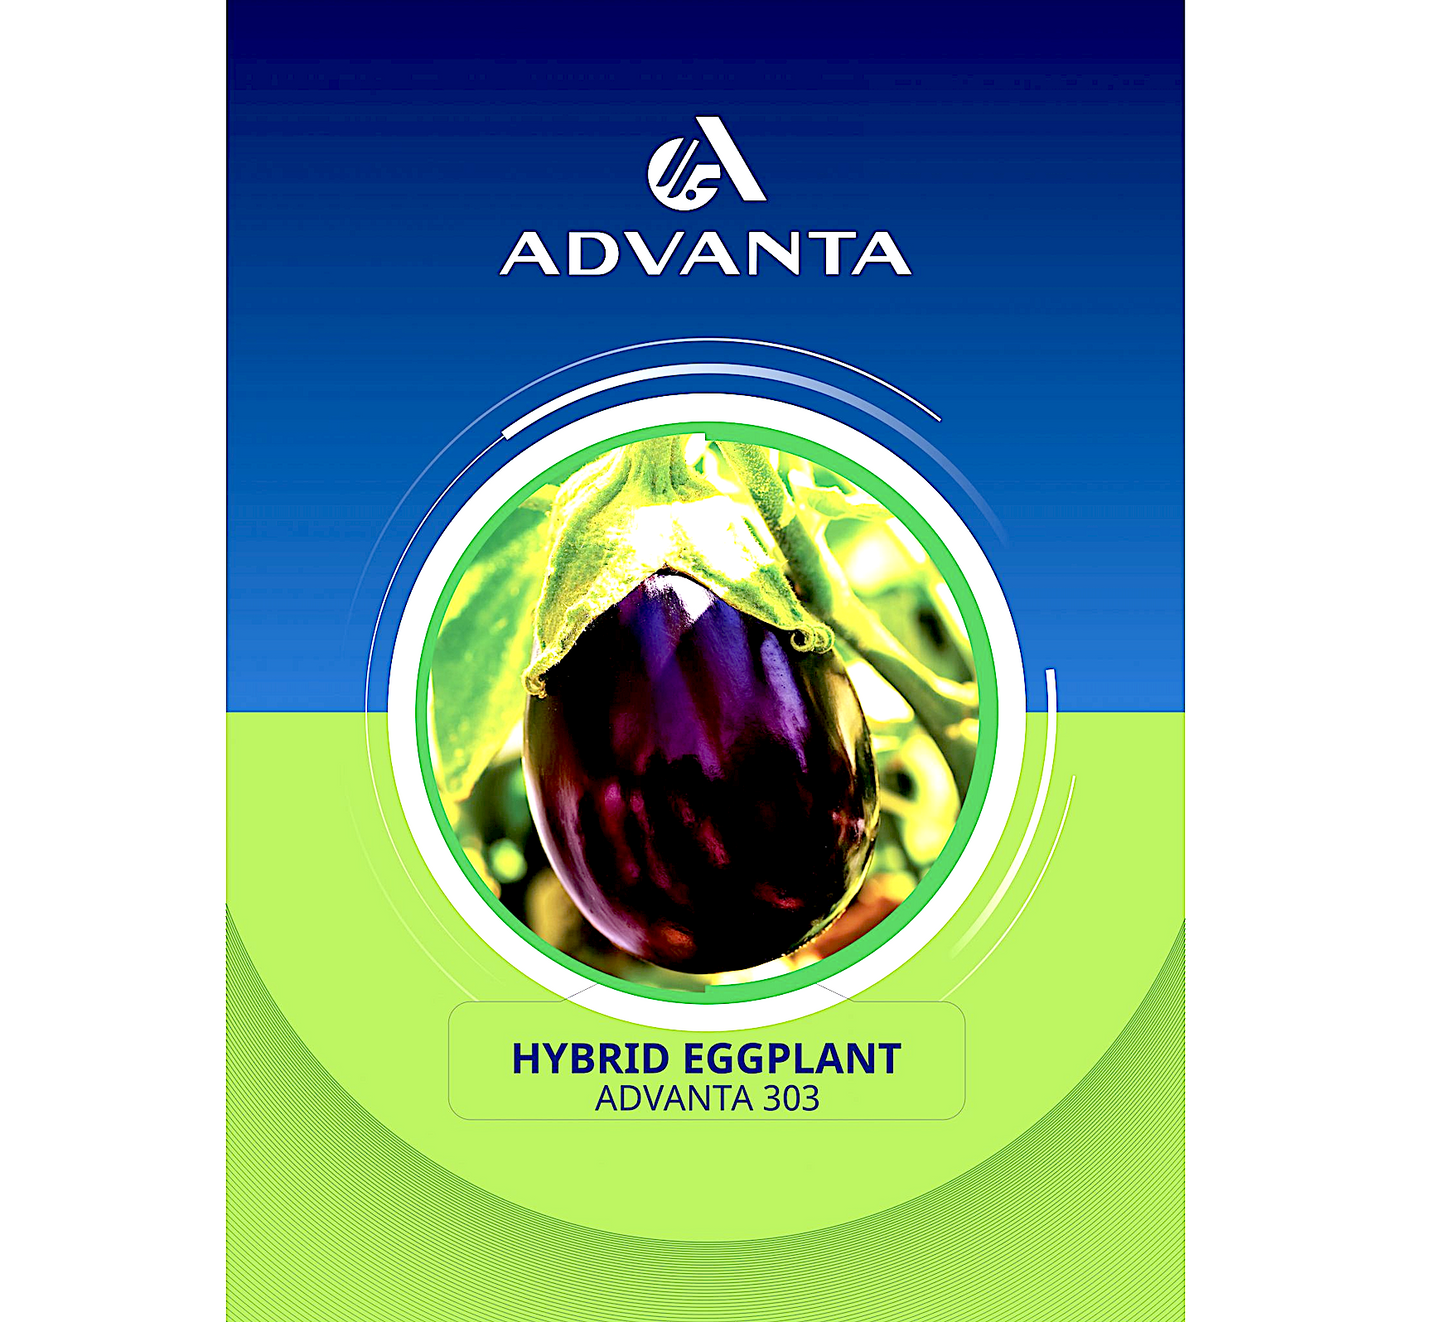 Advanta 303 Hybrid Eggplant Seeds 5g